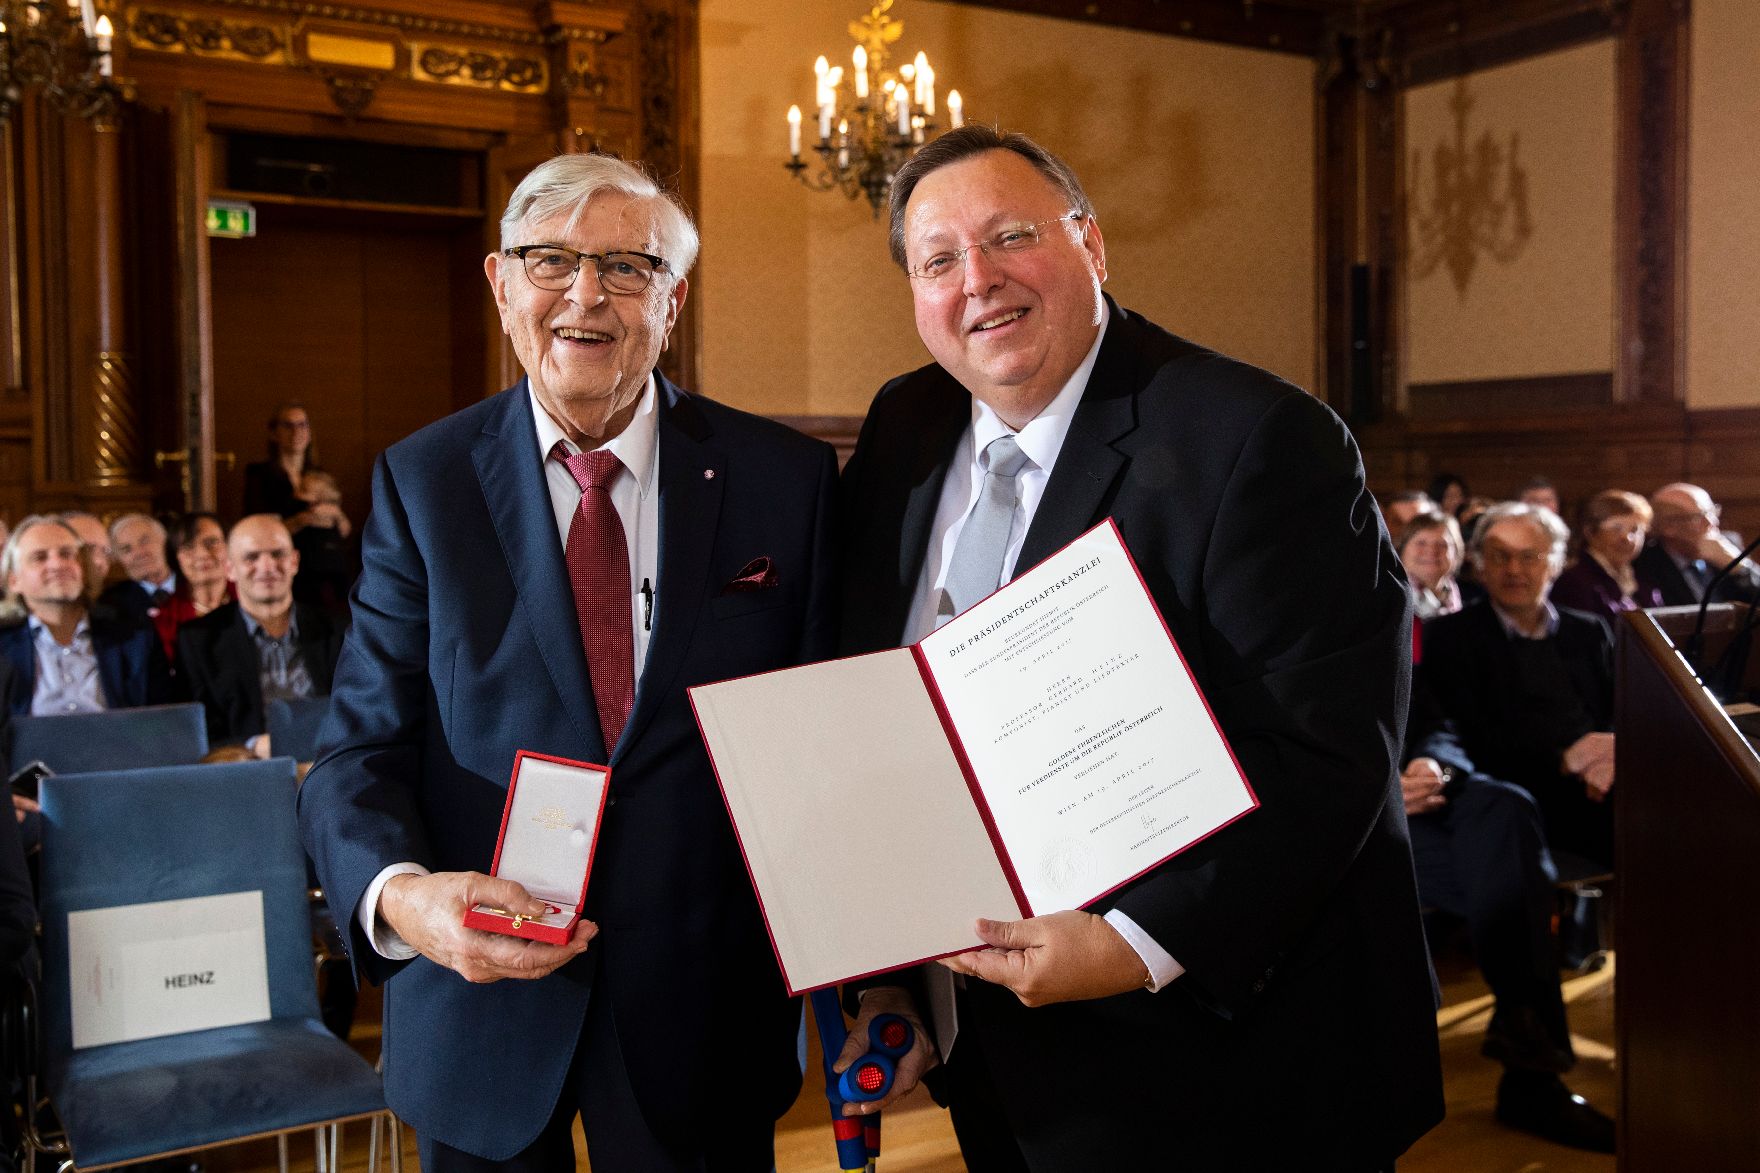 Am 3. Dezember 2018 wurden die Goldenen Ehrenzeichen für Verdienste um die Republik Österreich an Gerhard Heinz (l.) und Helmut Steubl überreicht. Im Bild mit Reinhold Hohengartner (r.).